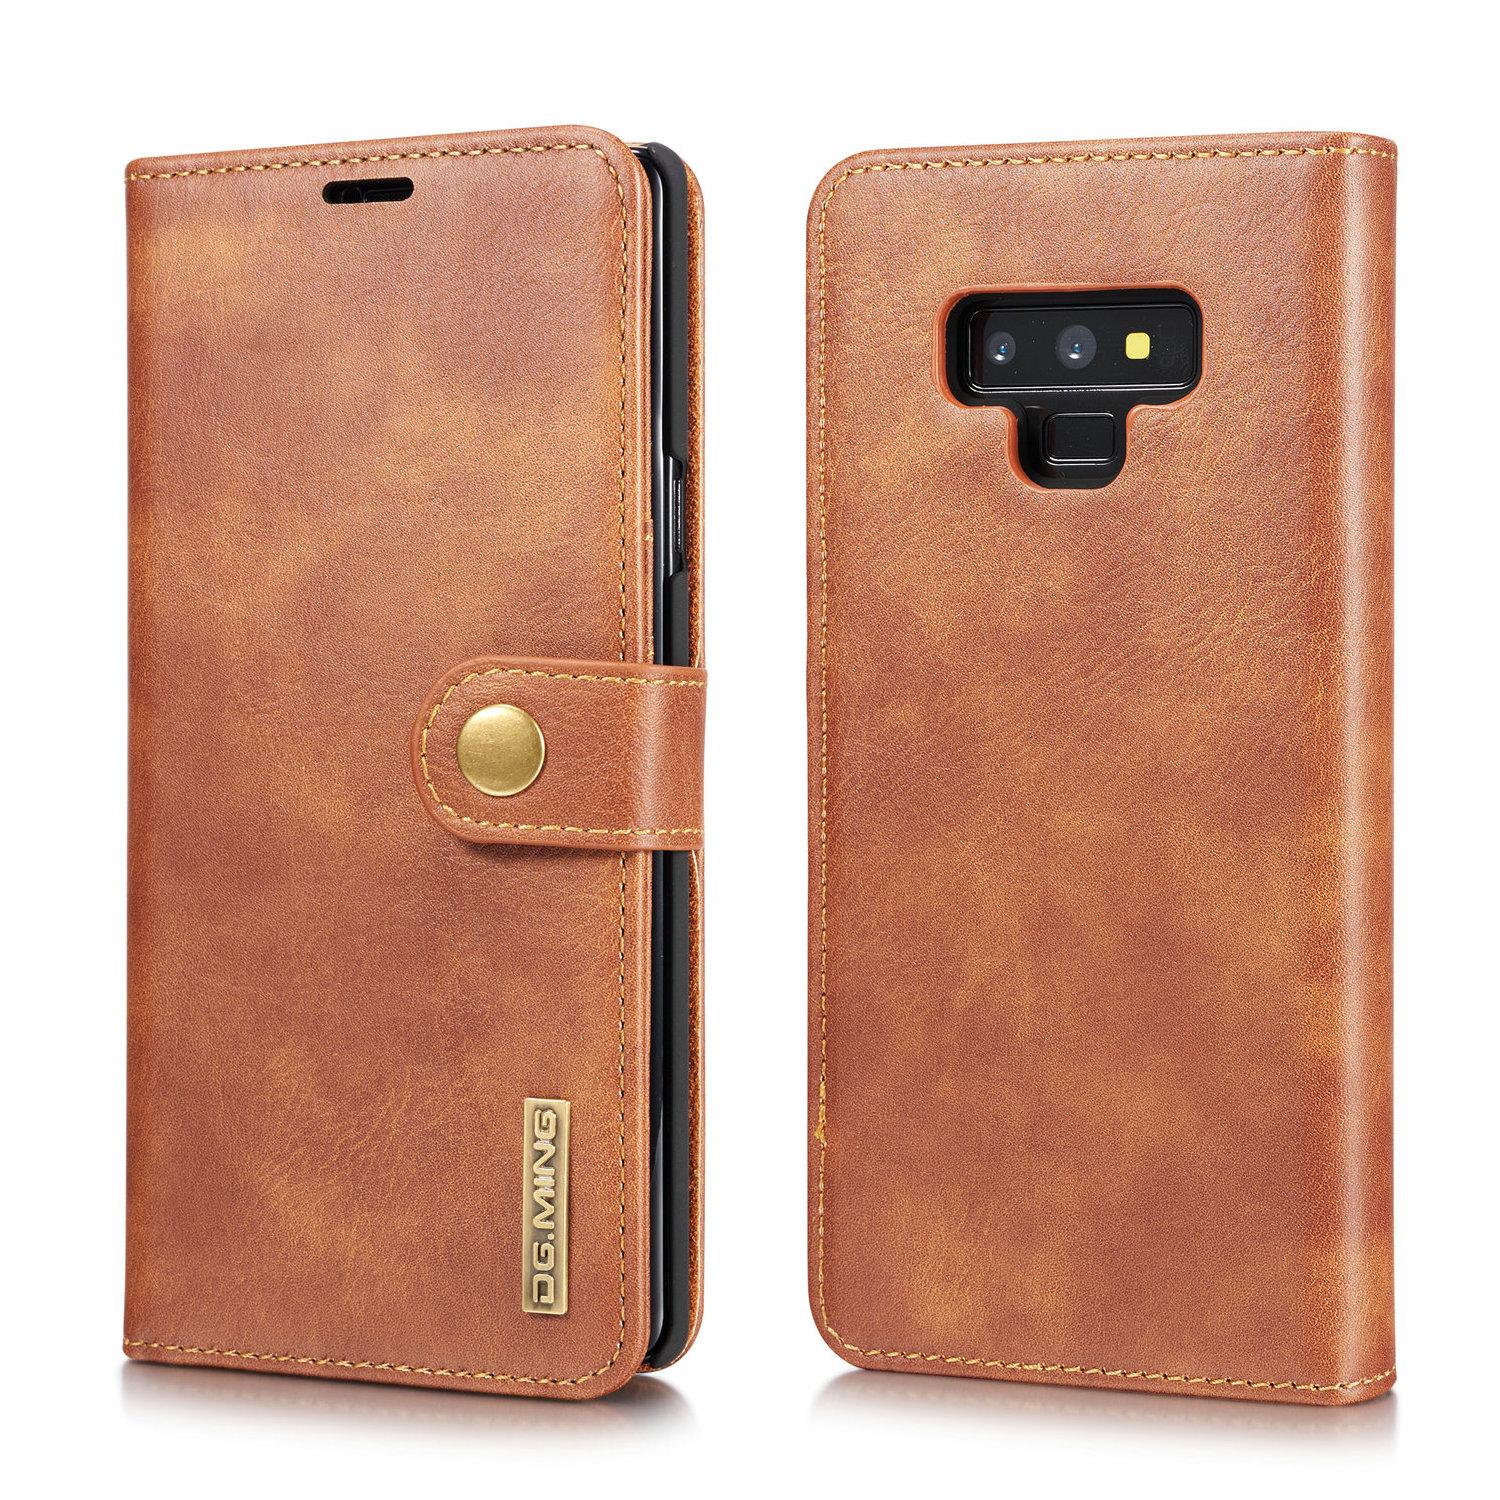 Galaxy Note 9 Plånboksfodral med avtagbart skal, cognac